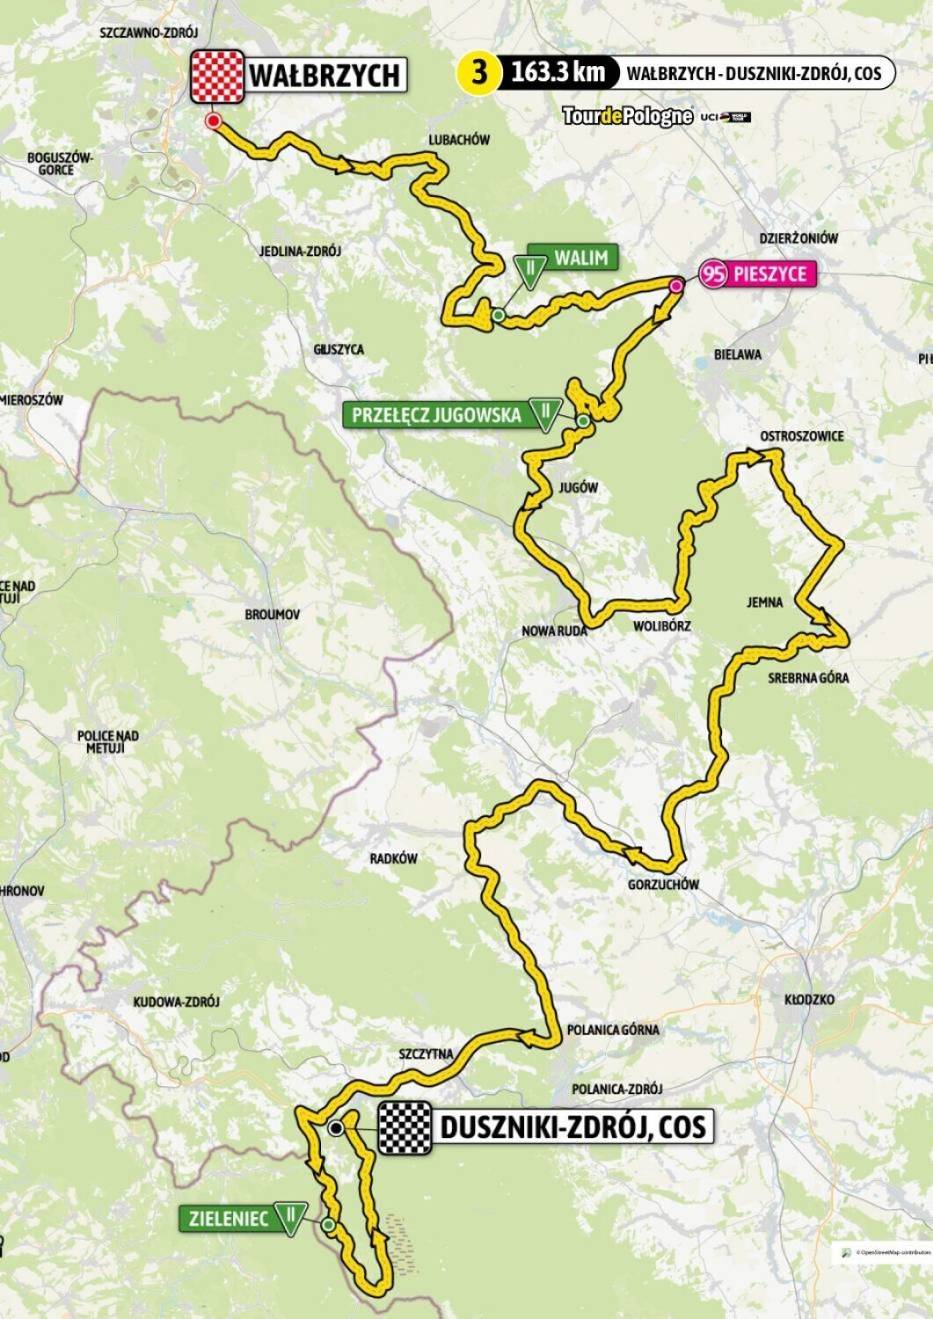 Zamknięcia dróg i utrudnienia na trasie Tour de Pologne w Wałbrzychu oraz w regionie